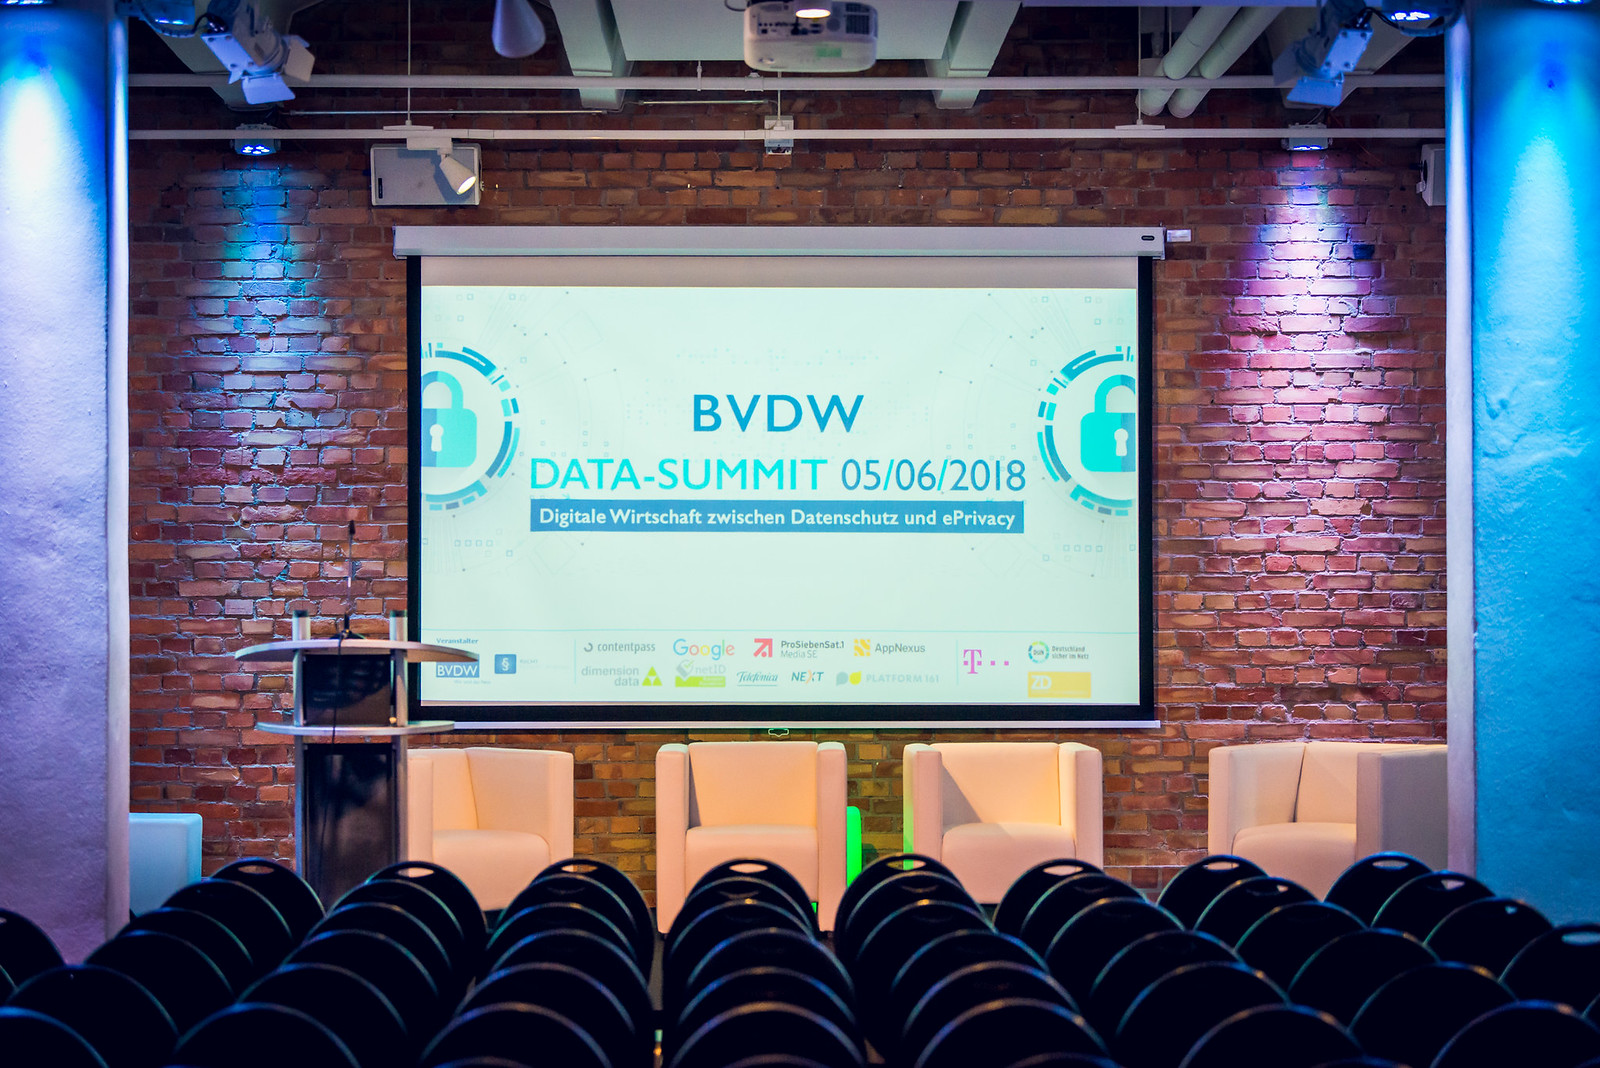 Data-Summit 2018